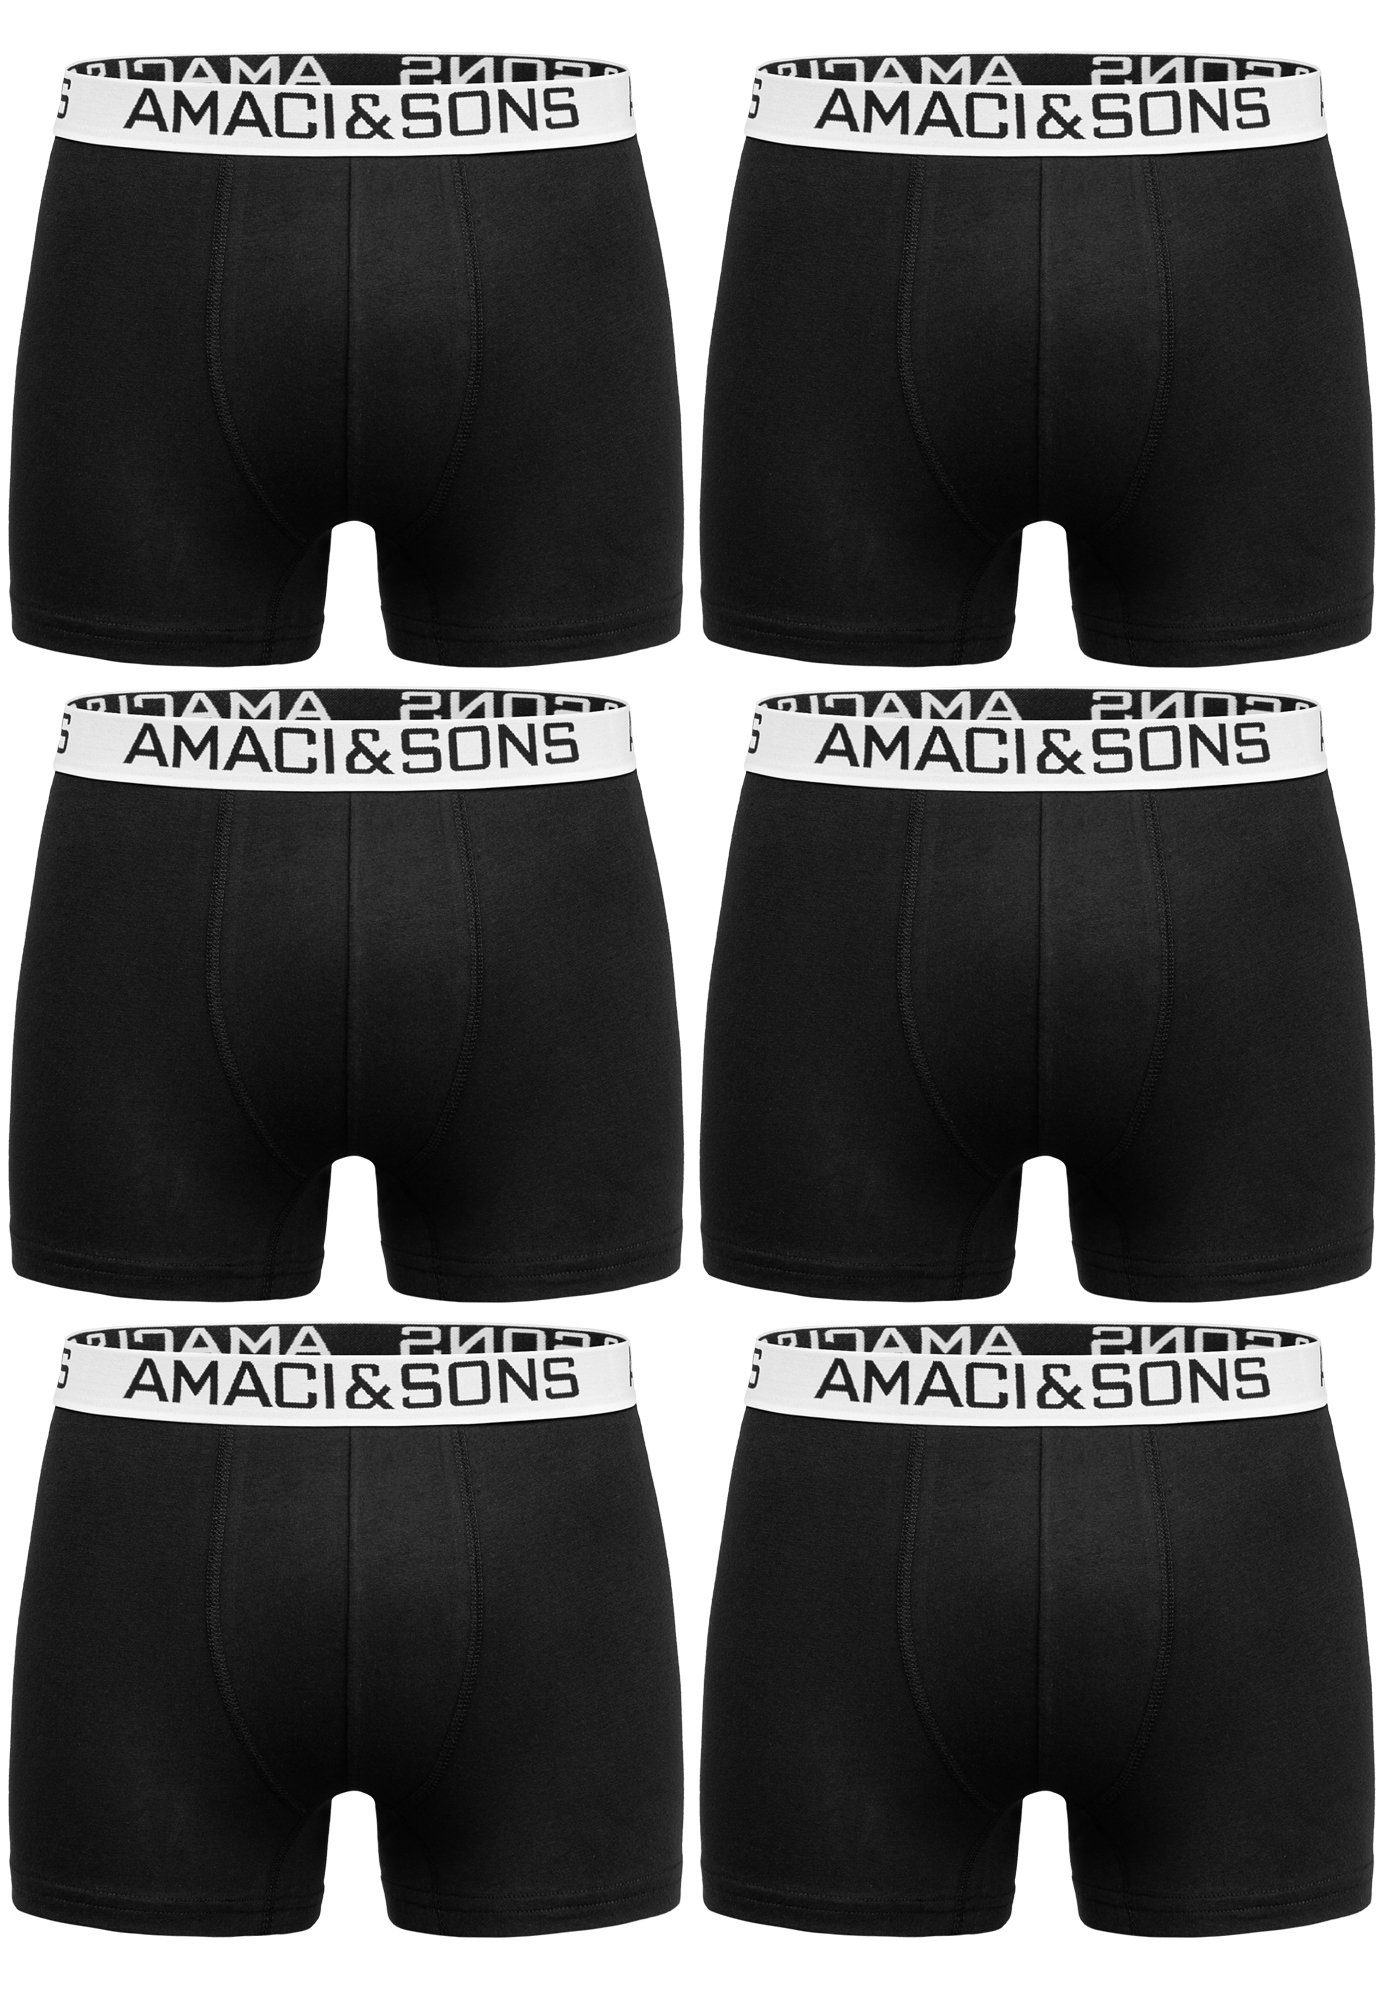 Amaci&Sons Boxershorts WESTON 6er Pack Boxershorts (6er-Pack) Herren Baumwolle Männer Unterhose Unterwäsche Schwarz/Weiß